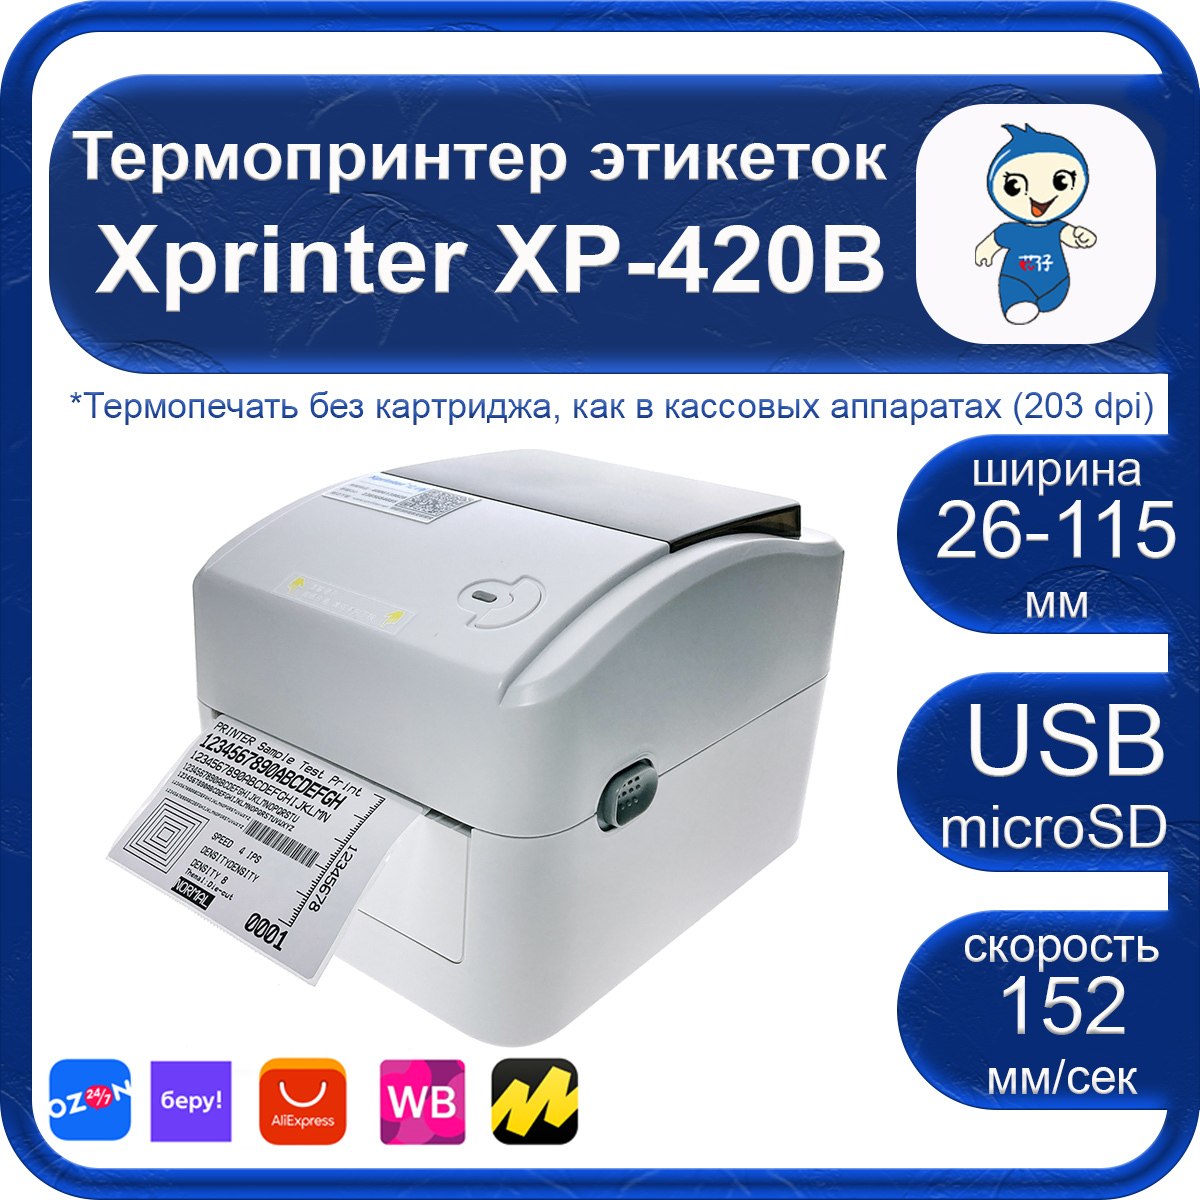 Xprinter Xp-420B Wi-Fi